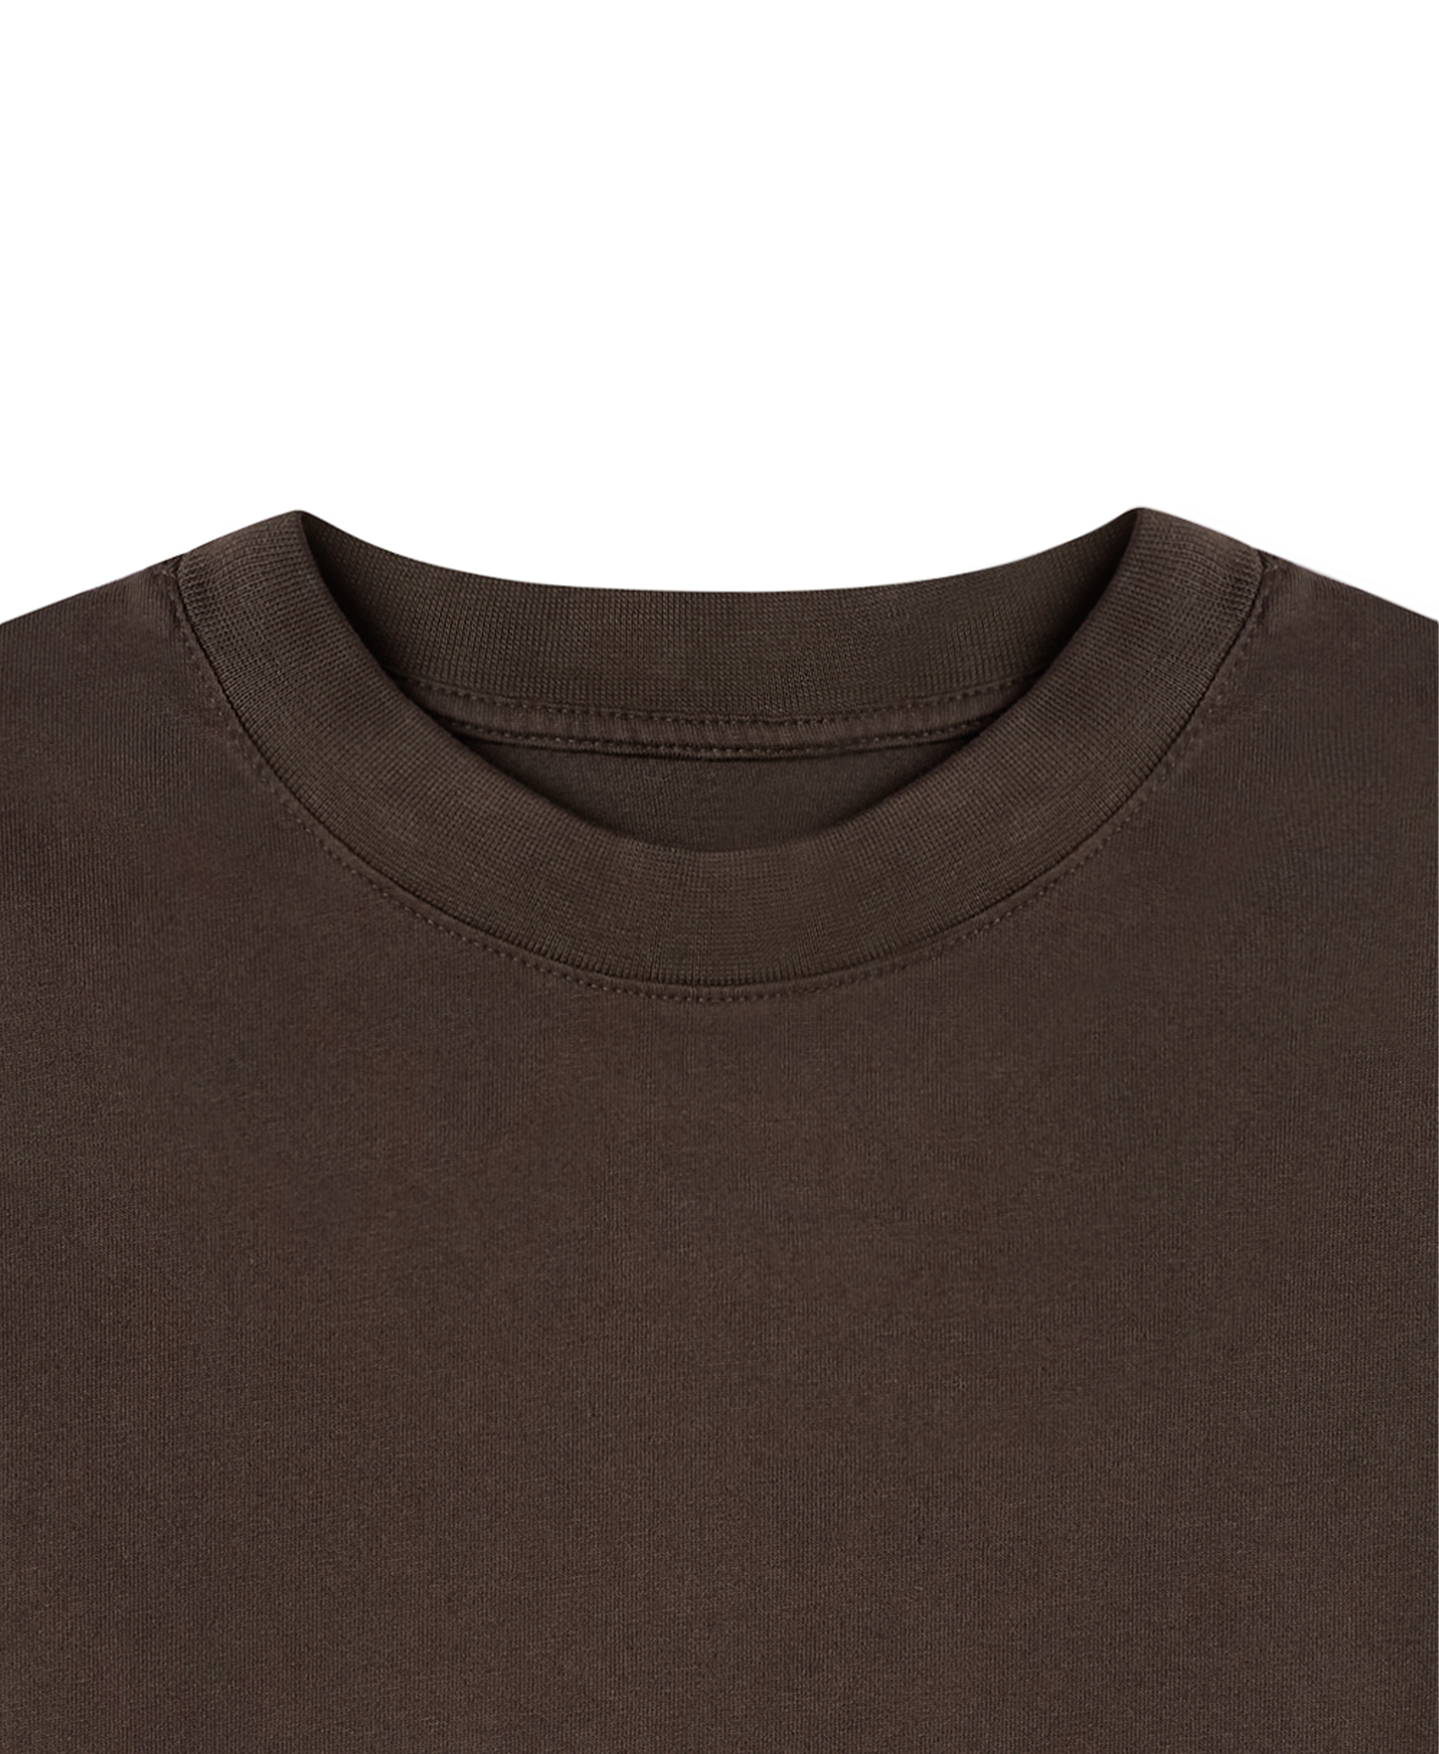 180 GSM 'Dark Chocolate' T-Shirt